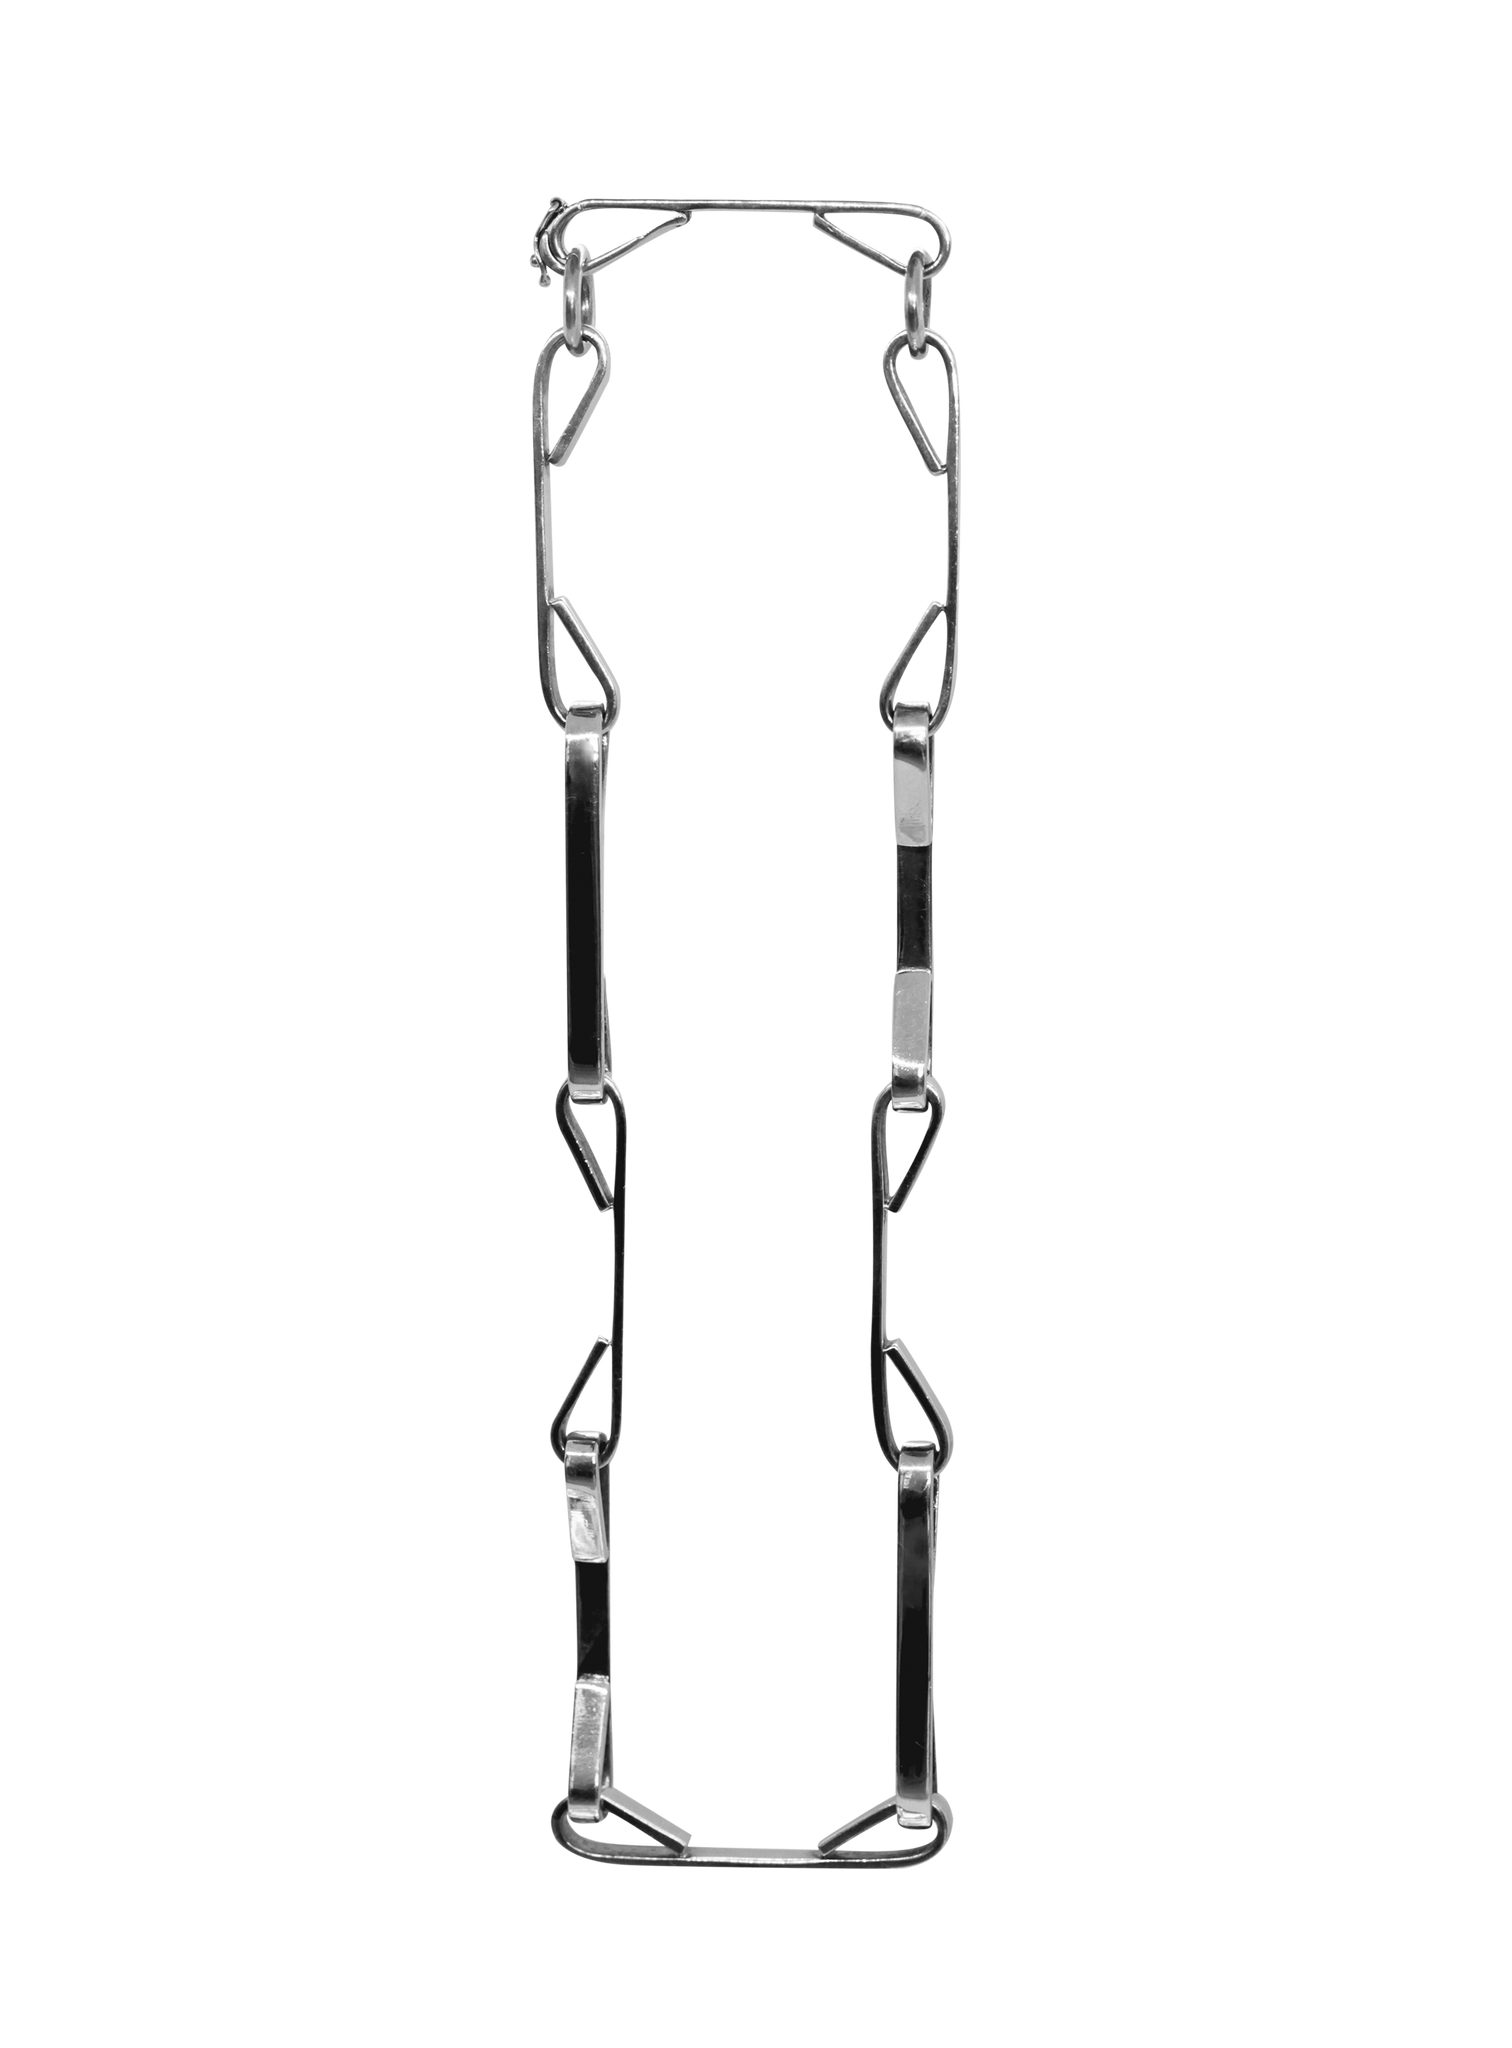 GRAPAS XL Chain